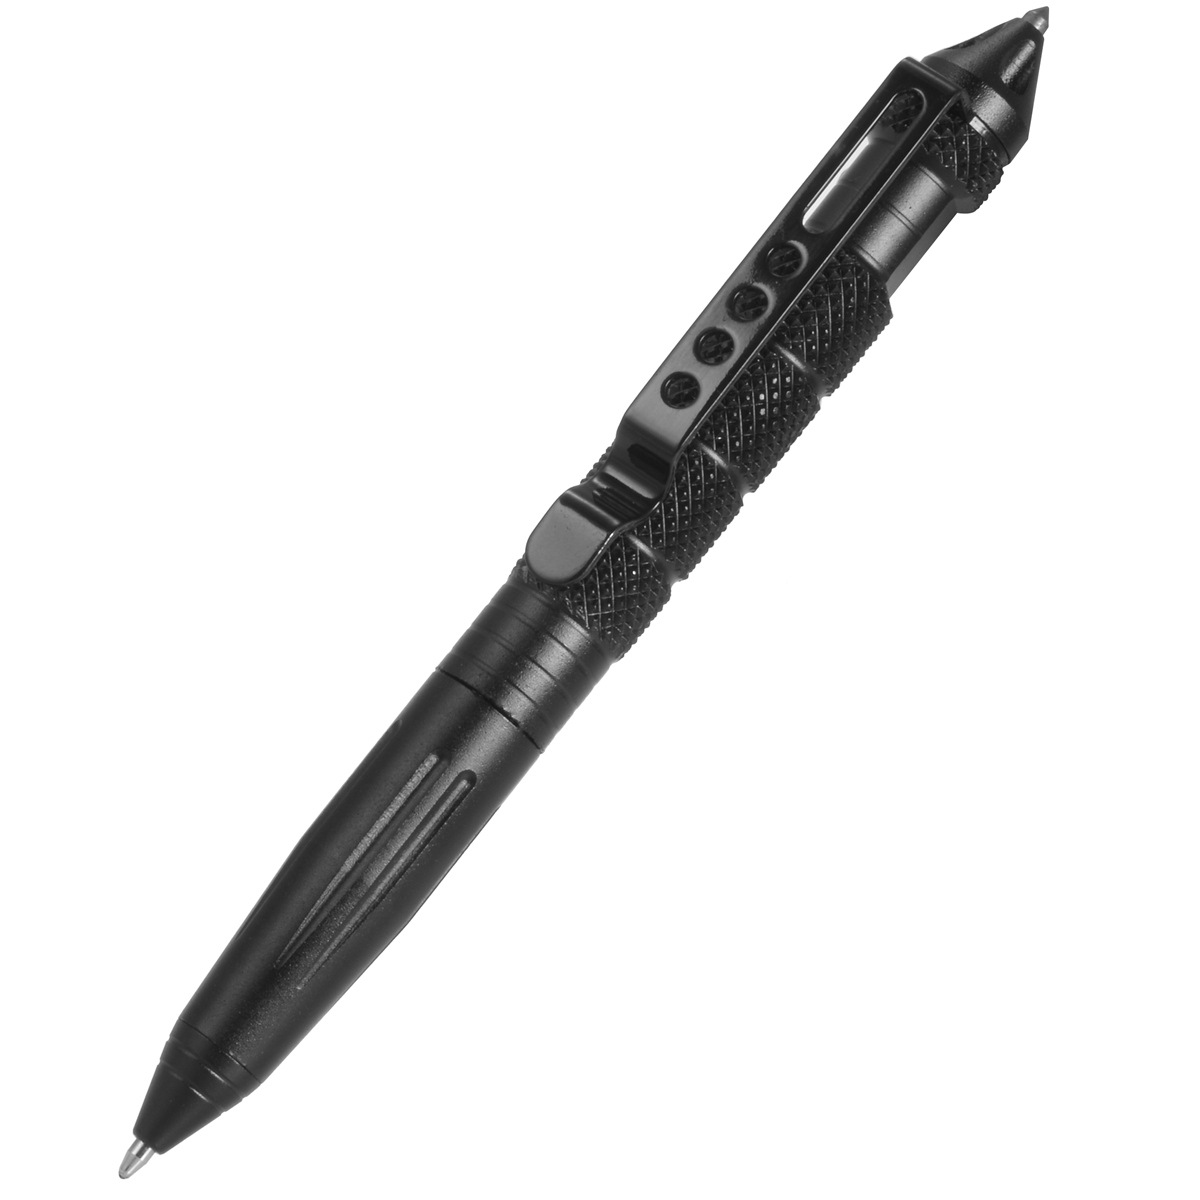      ݼ   ǿ Ż  ٱ ֽ ö  /Direct factory price defense attack metal tactical pen outdoor escape ballpoint pen multi-function